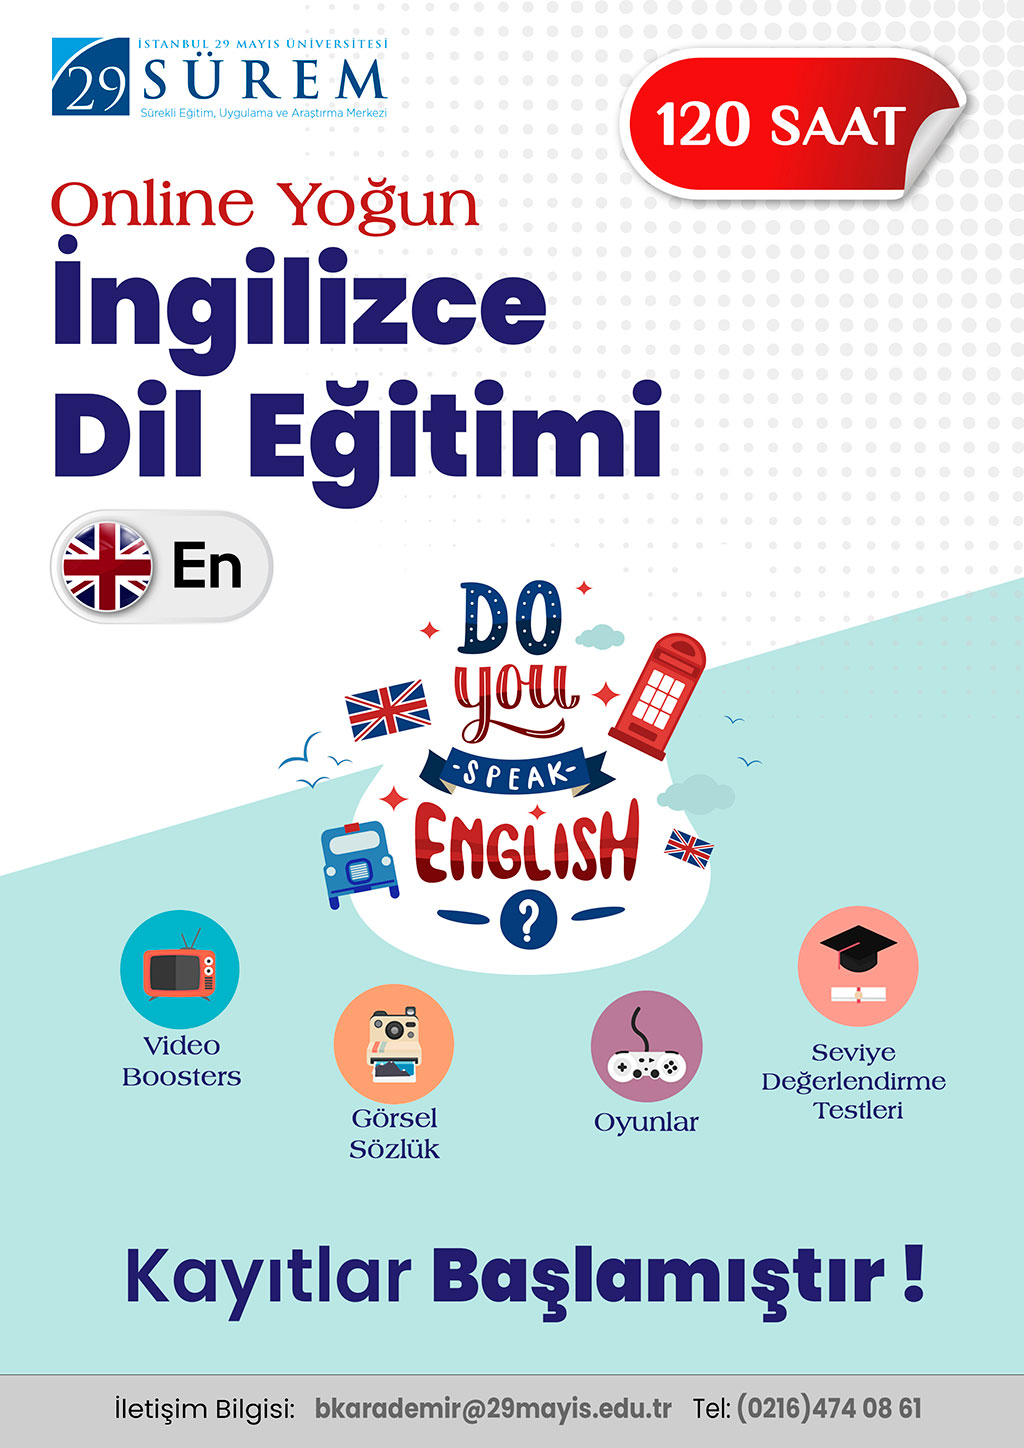 Online Yoğun İngilizce Dil Eğitimi